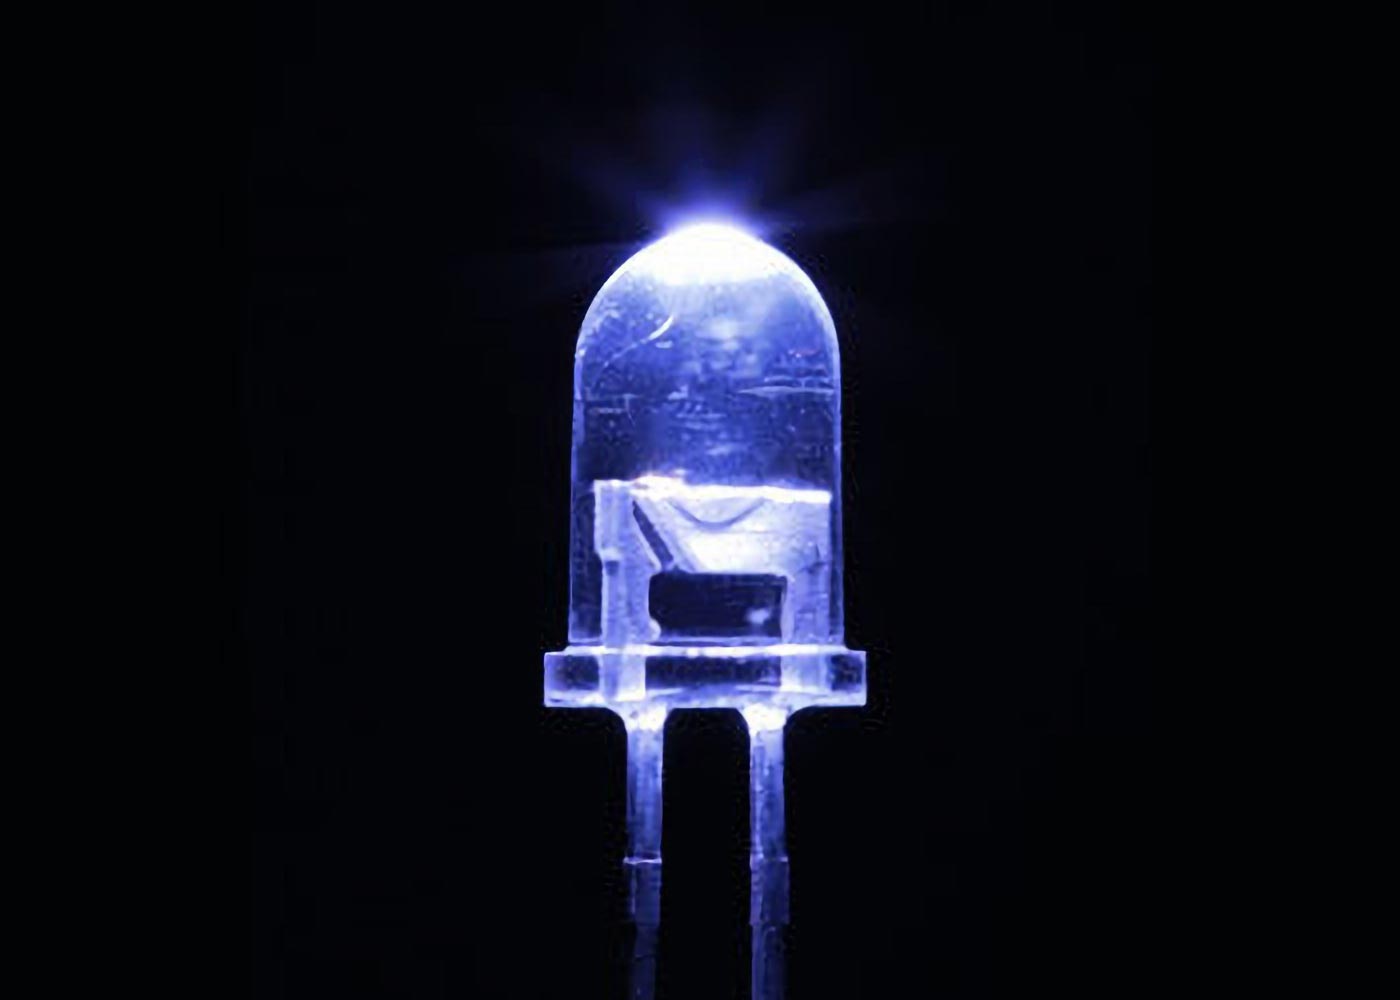 El LED ultravioleta lejano mata bacterias y virus de manera eficiente sin dañar a las personas